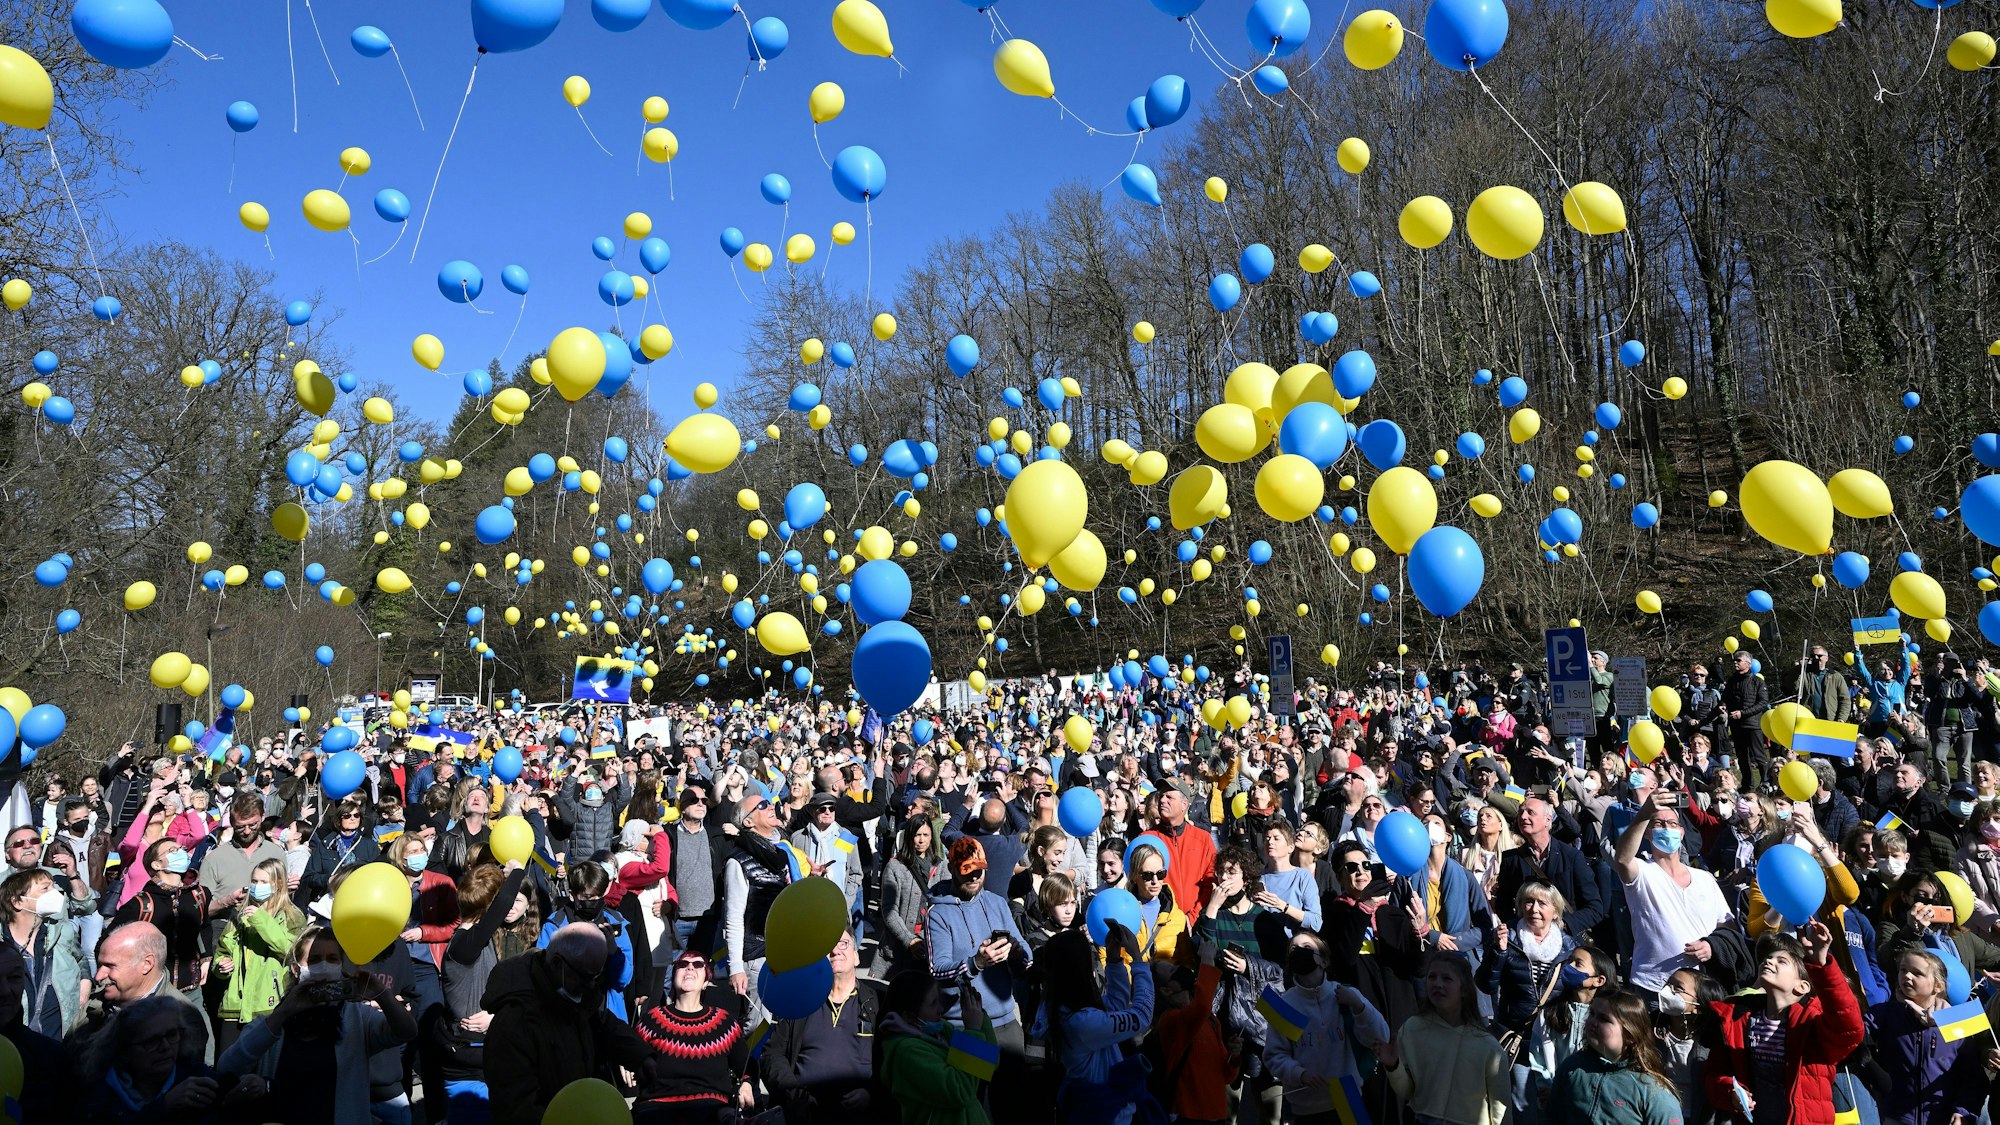 Hunderte Menschen lassen gelbe und blaue Luftballons in die Luft steigen.